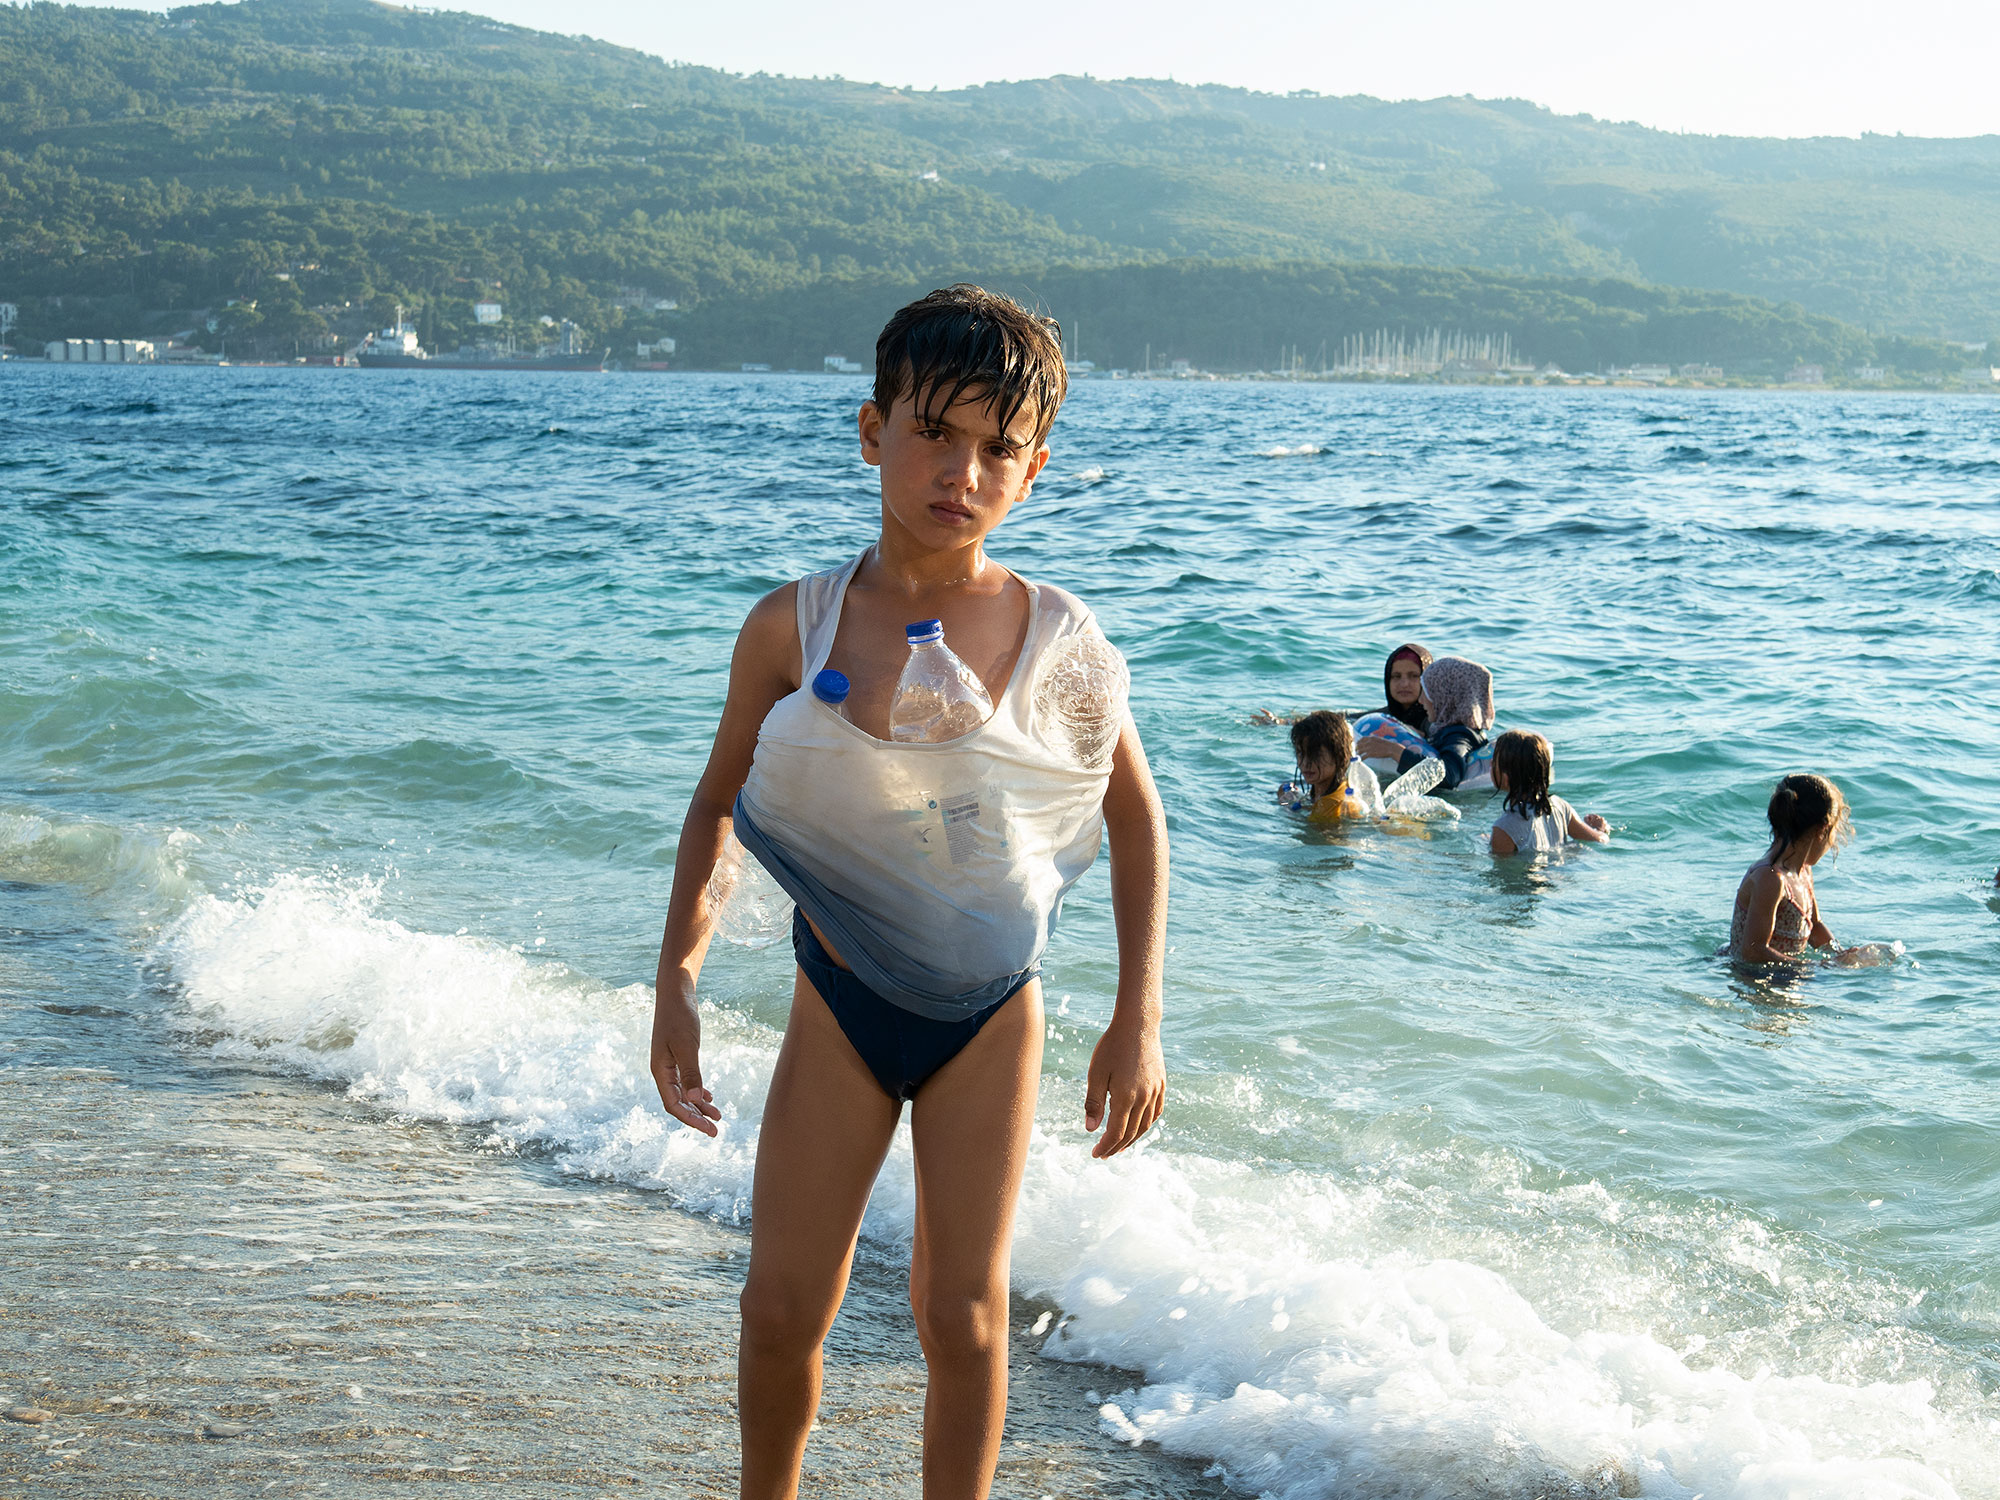 希臘，薩摩斯島，2020年7月。一名年輕的敘利亞男孩正在嘗試學習游泳，從海中返回營地。因新冠病毒疫情肆虐，所有尋求庇護者們都需要在晚上7點前回到營地。此政策只針對營地內的人，不包括當地居民。（攝影／Enri Canaj／Magnum Photos）